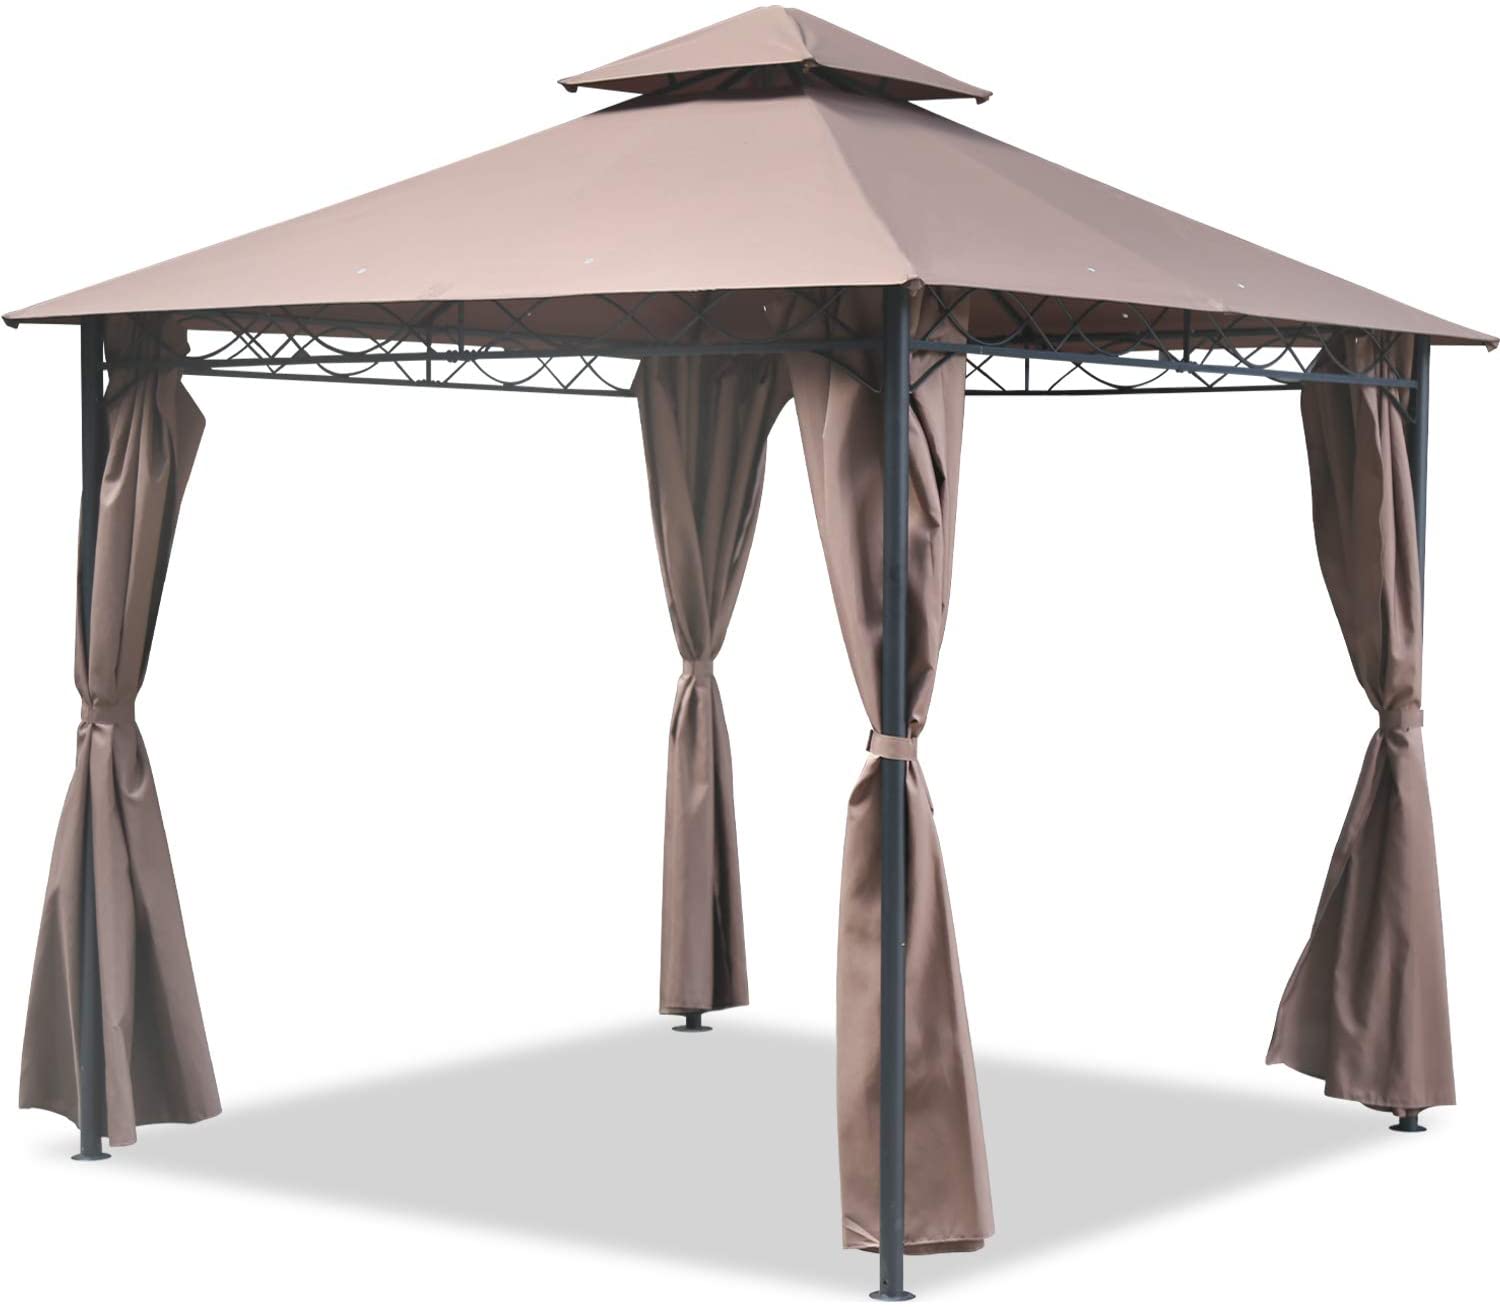 FDW Gazebo Canopy Tent